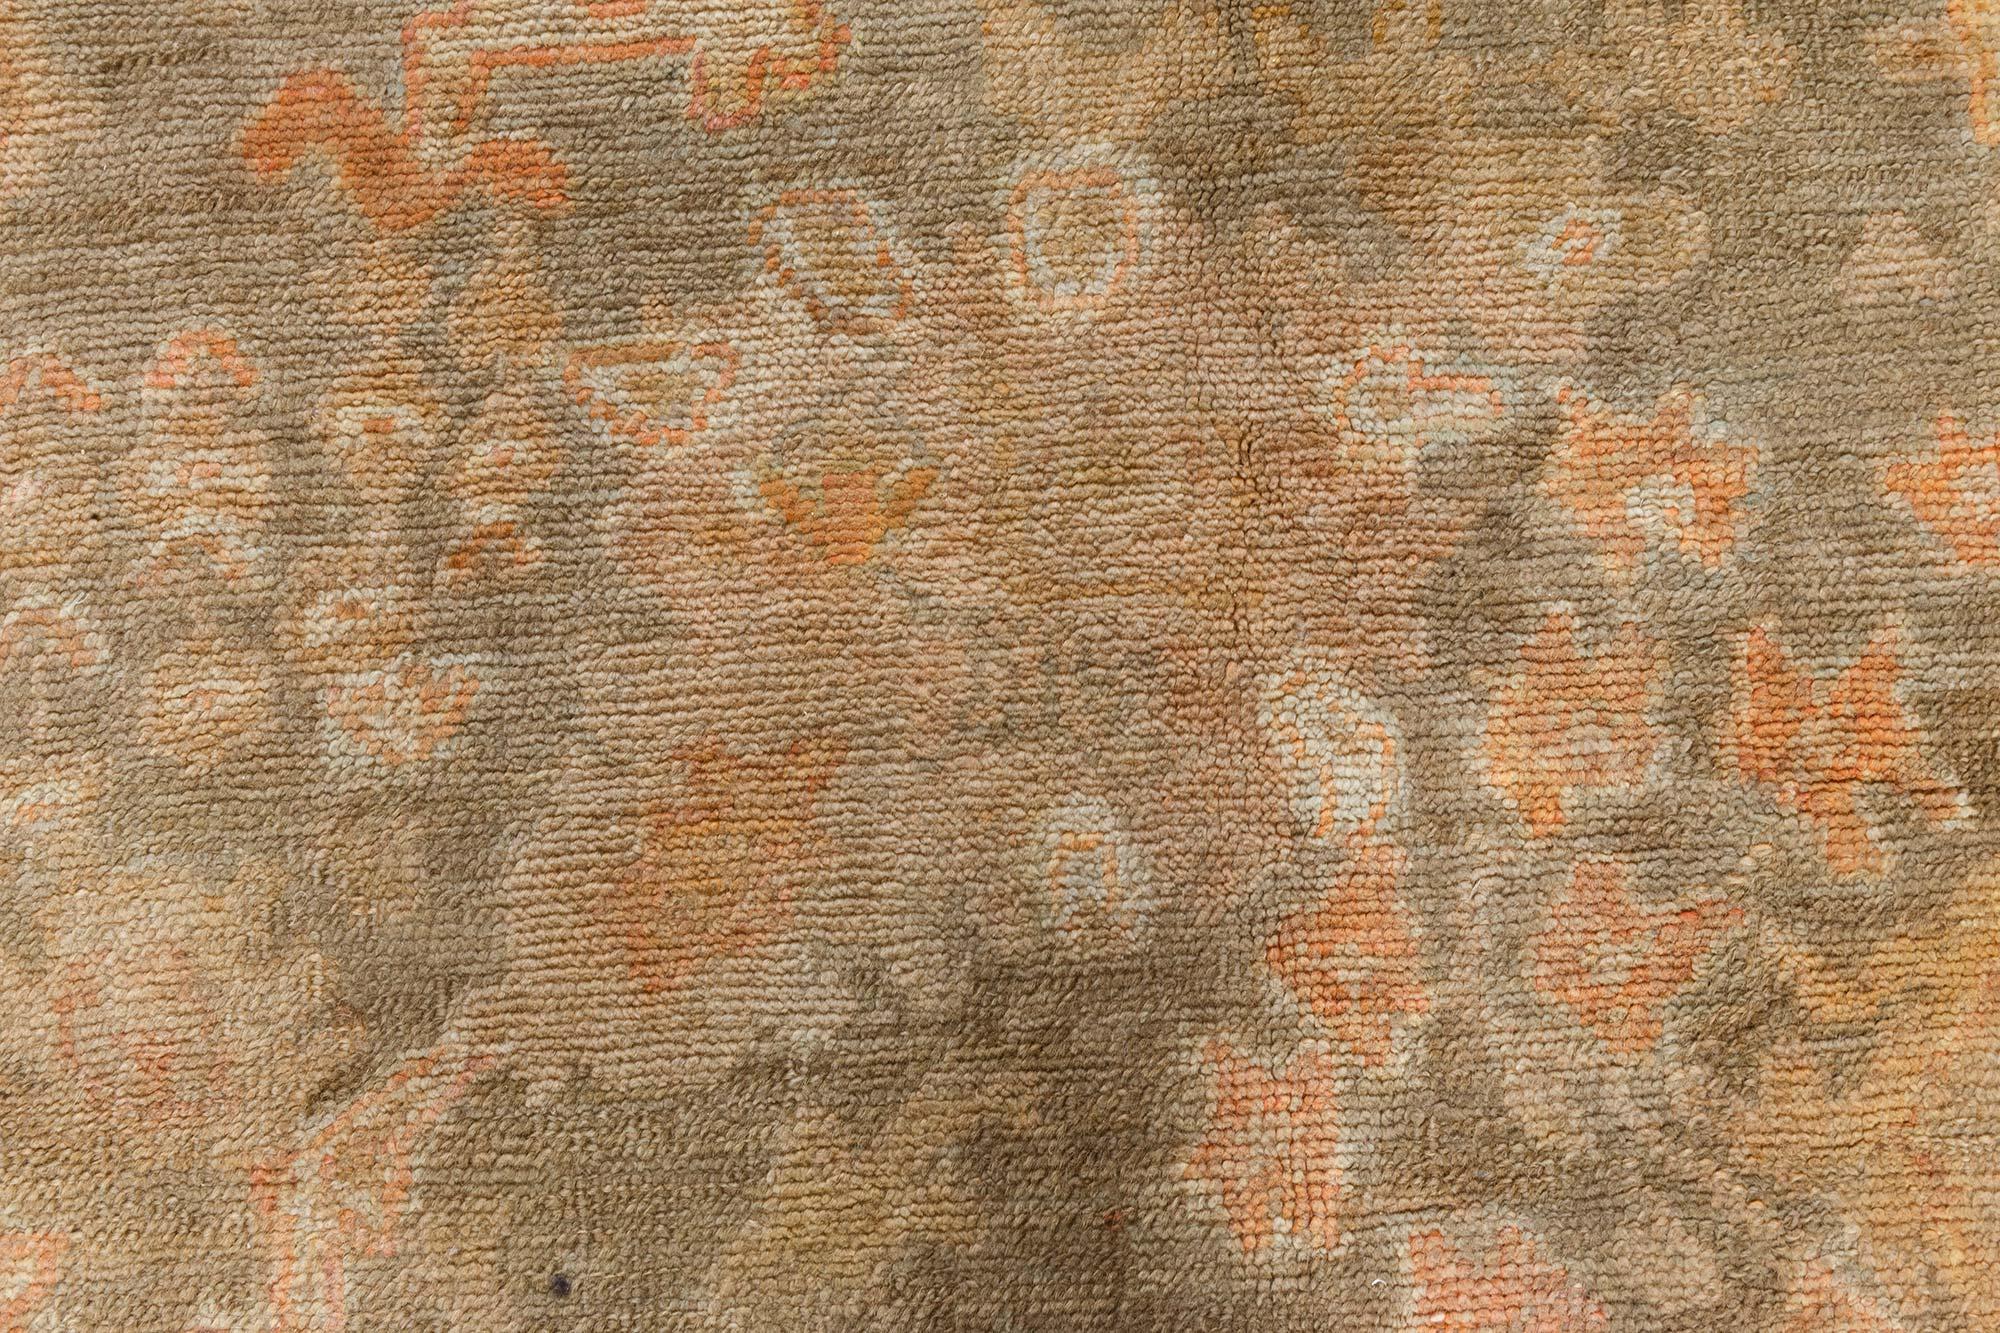 Authentischer türkischer Oushak-Teppich aus der Zeit um 1900, handgefertigt aus Wolle
Größe: 9'8